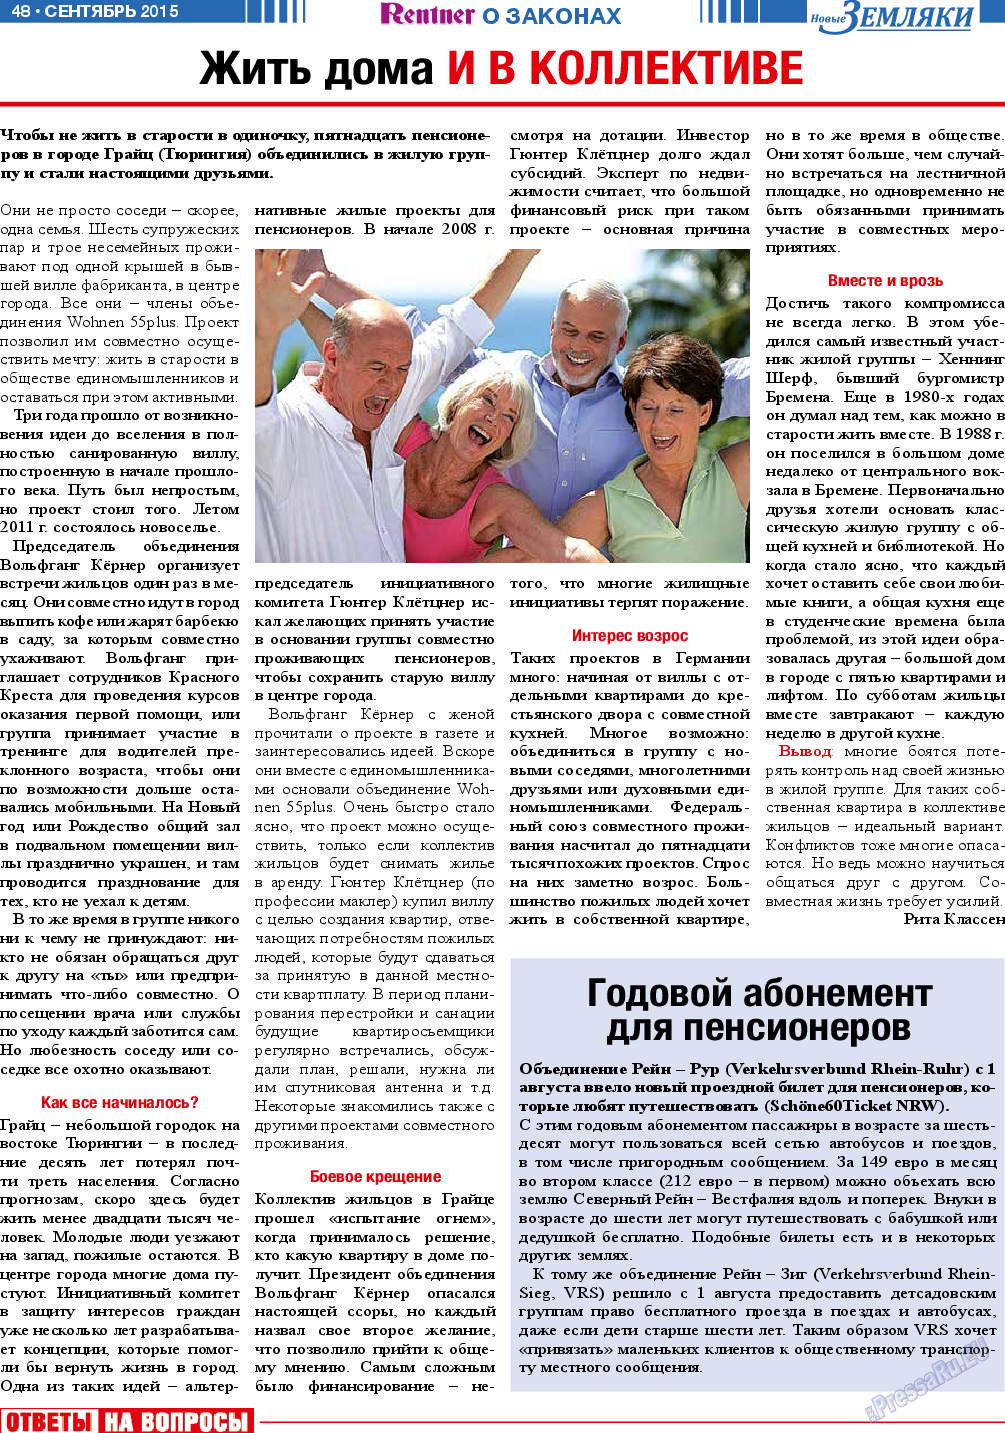 Новые Земляки (газета). 2015 год, номер 9, стр. 48